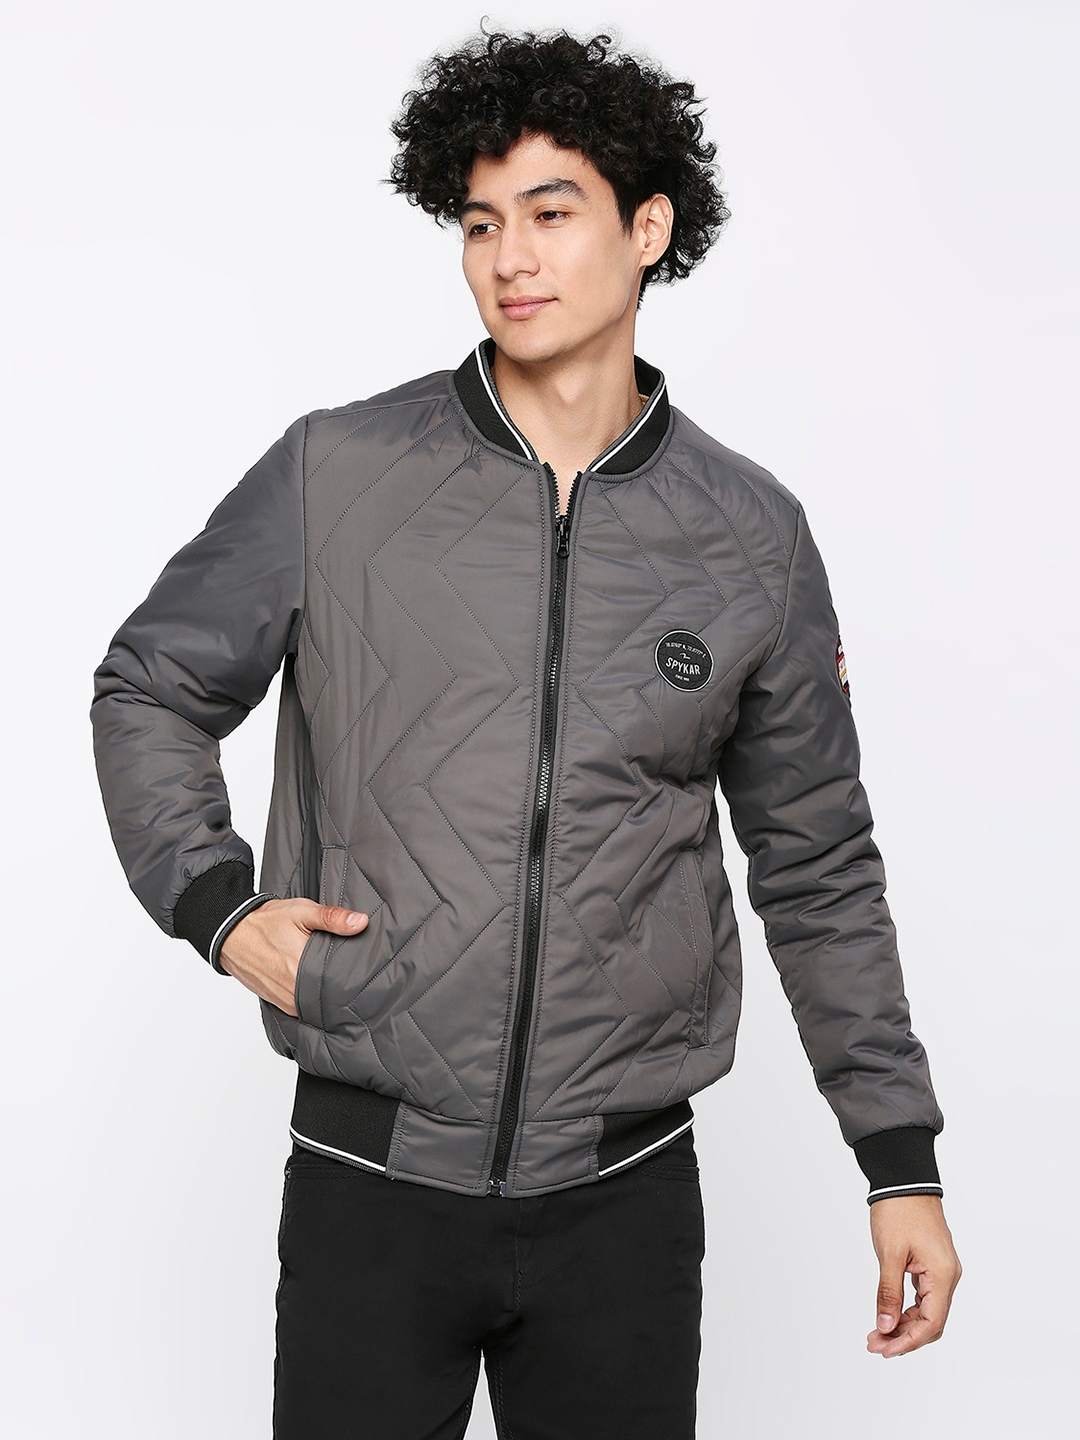 Spykar Charcoal Grey Desert Polyester Full Sleeve Casual Jacket For Men